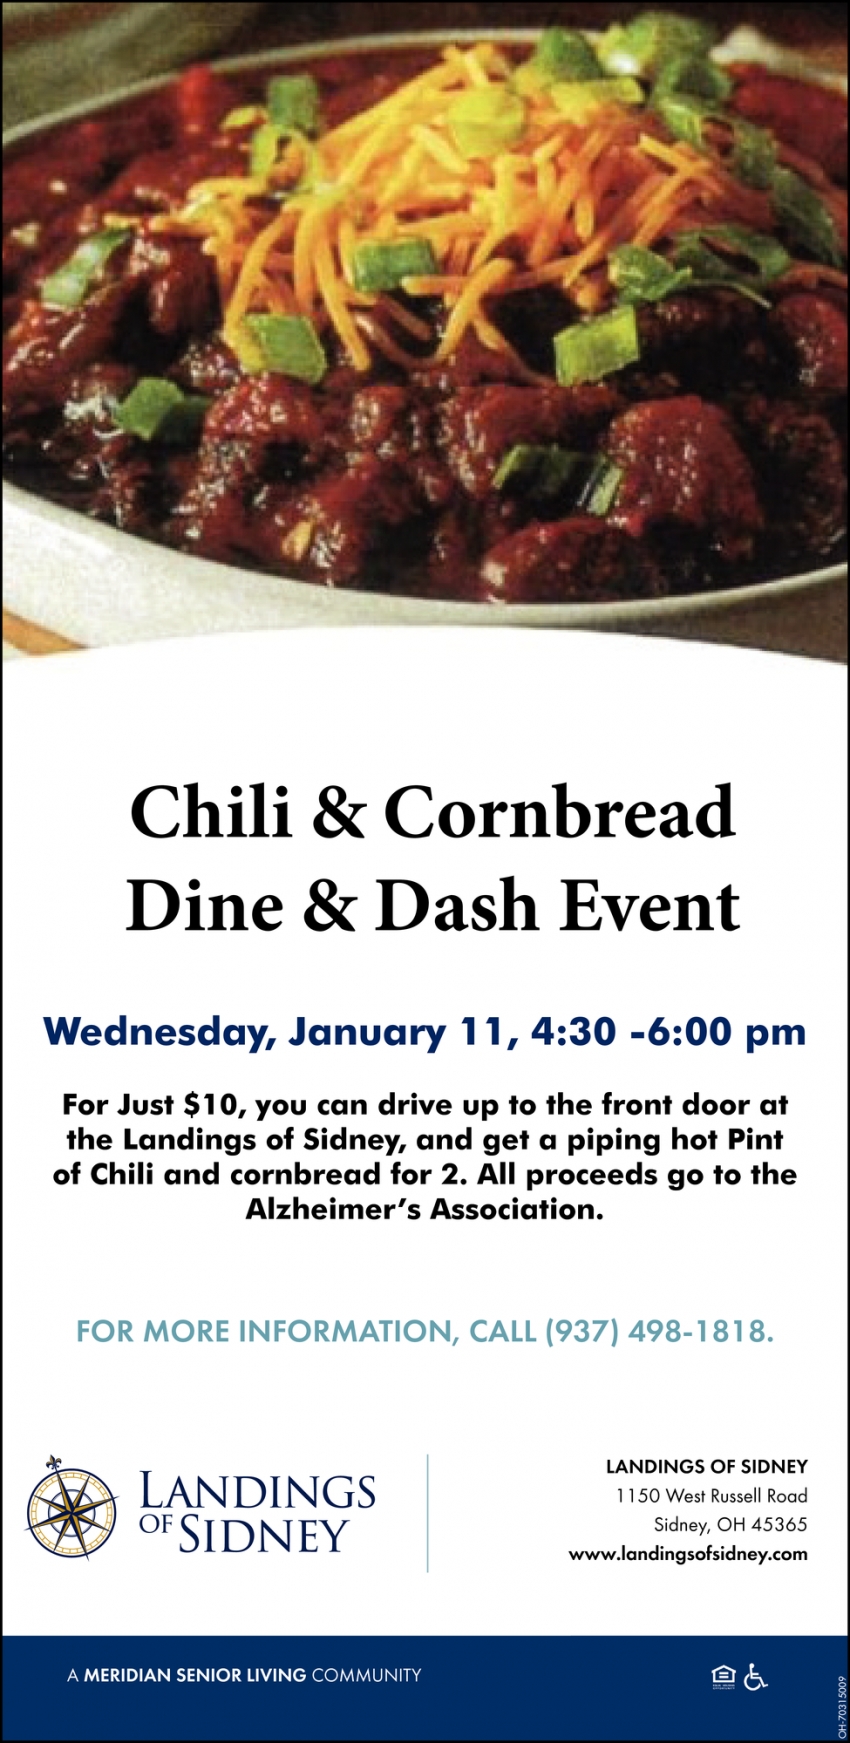 Chili & Cornbread Dine & Dash Event